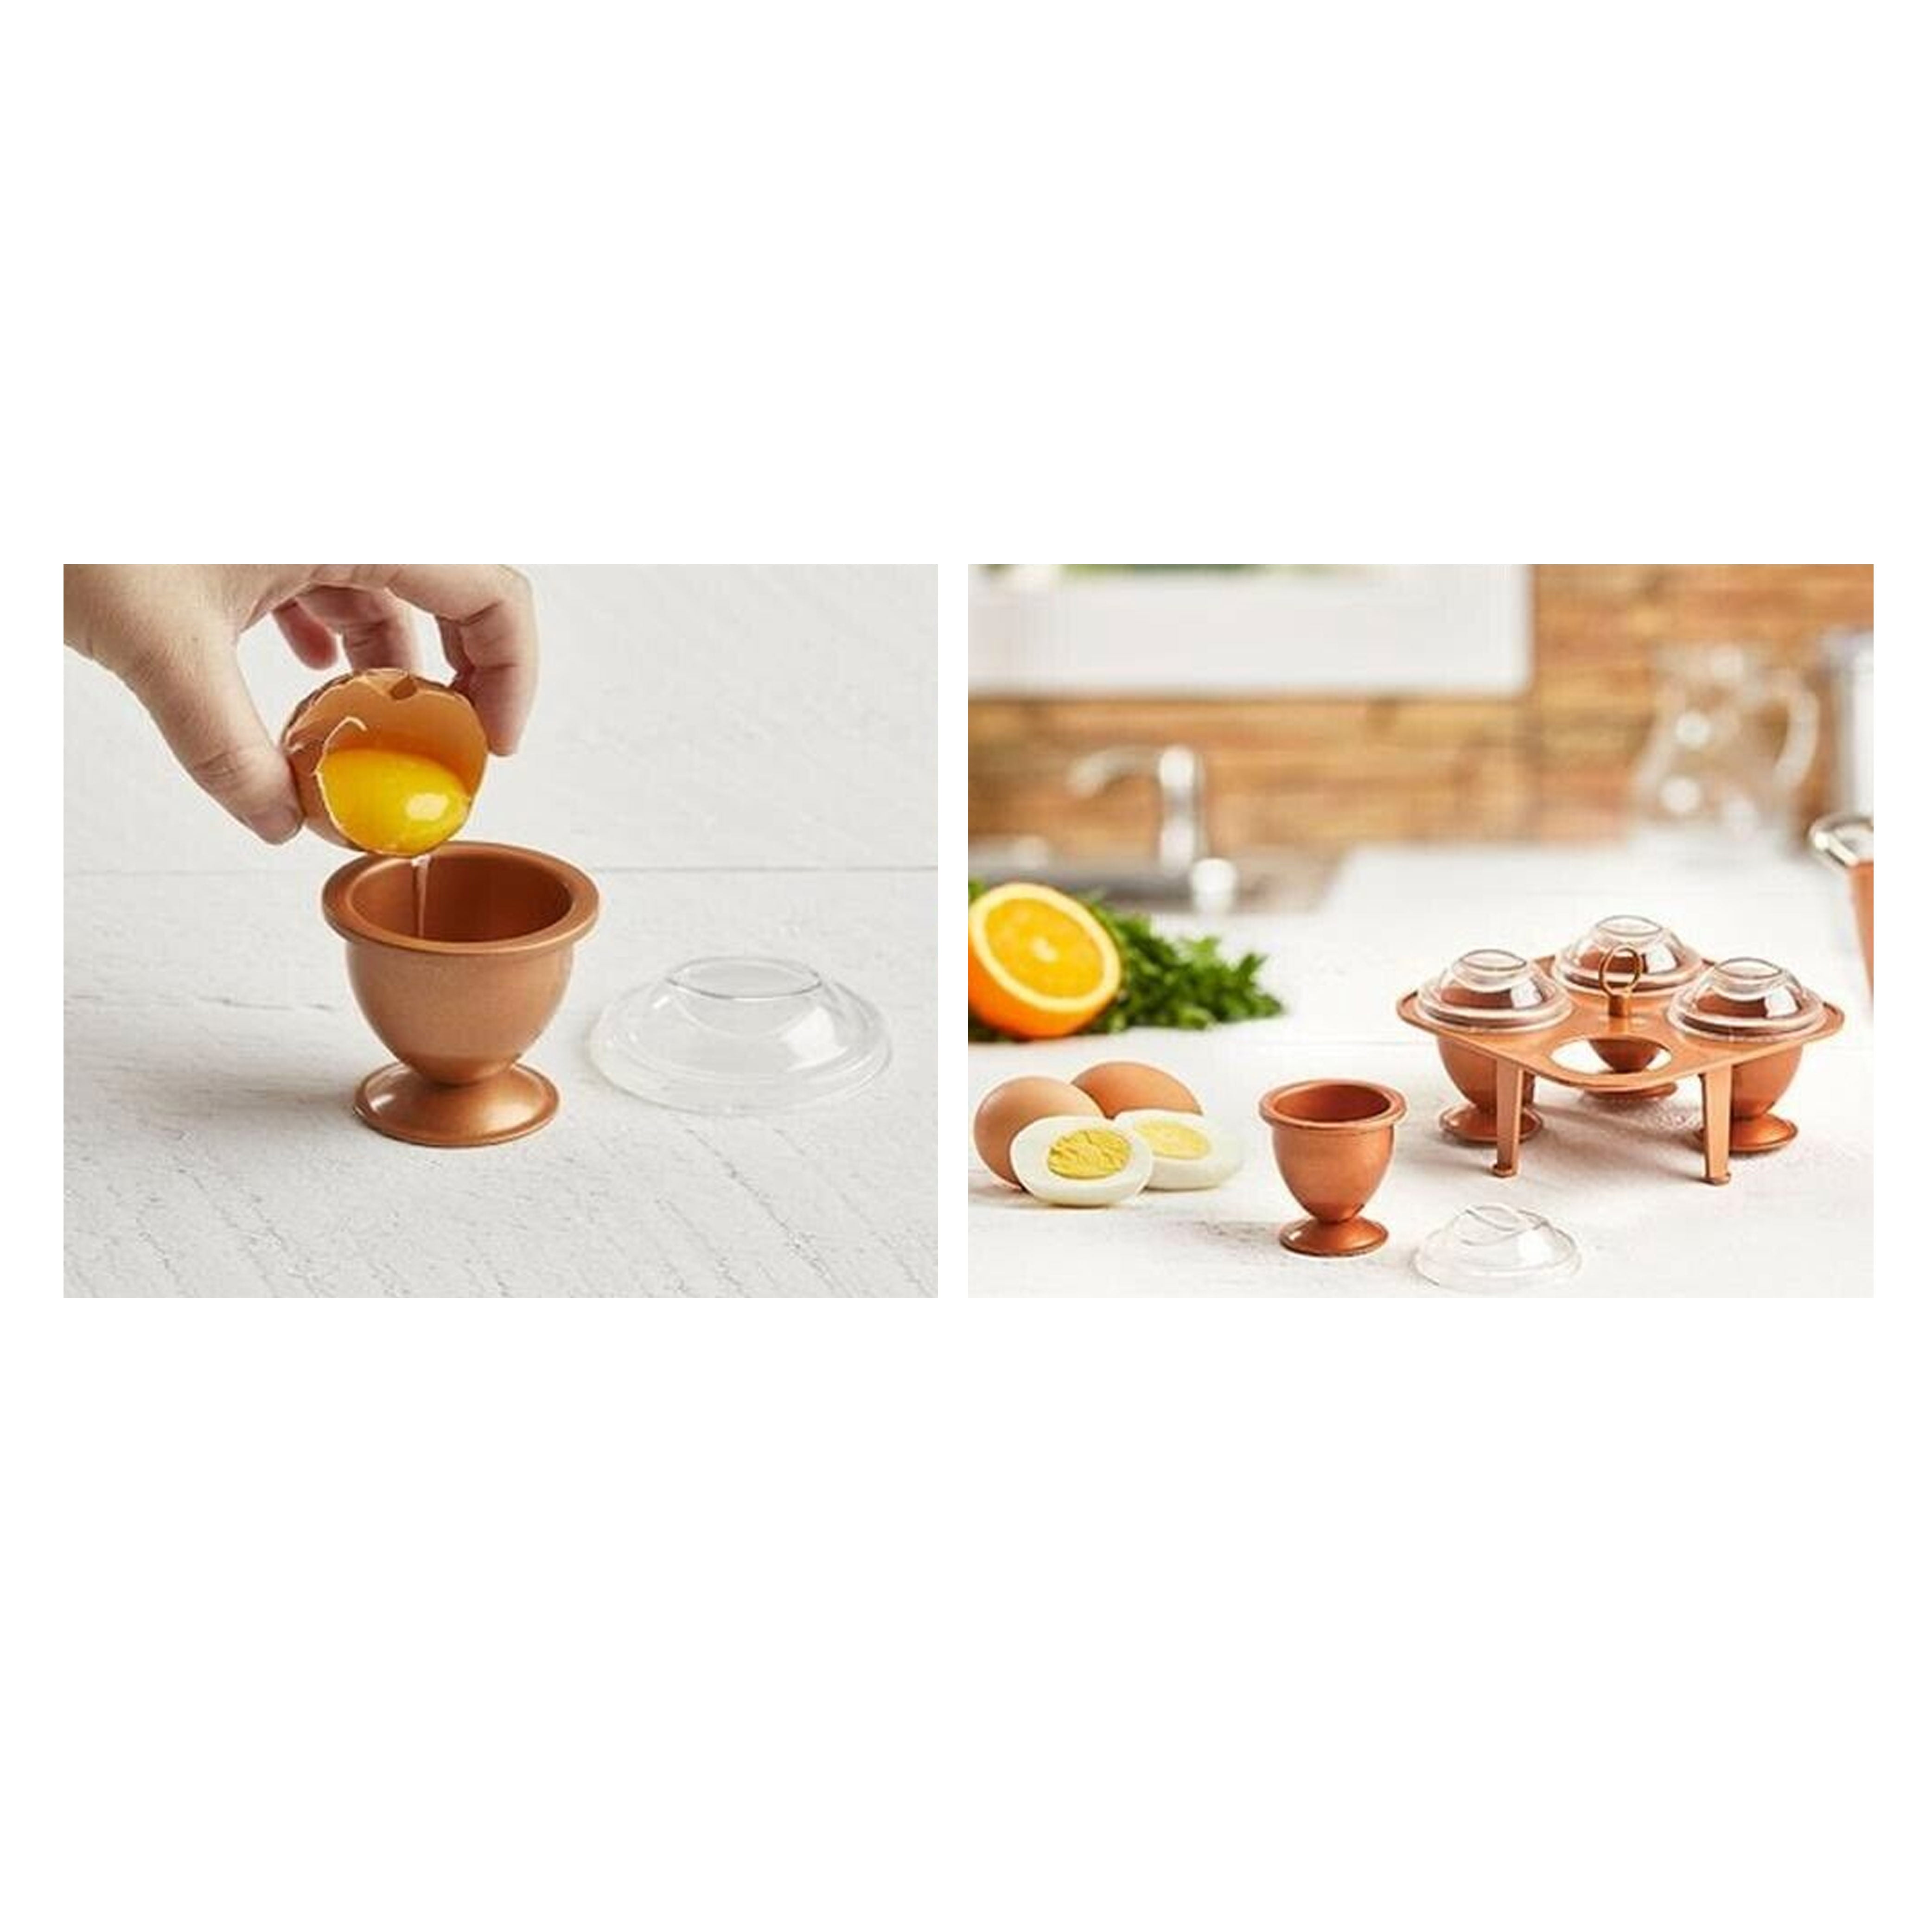 Tristar Copper Chef Perfect Egg Maker - Macy's